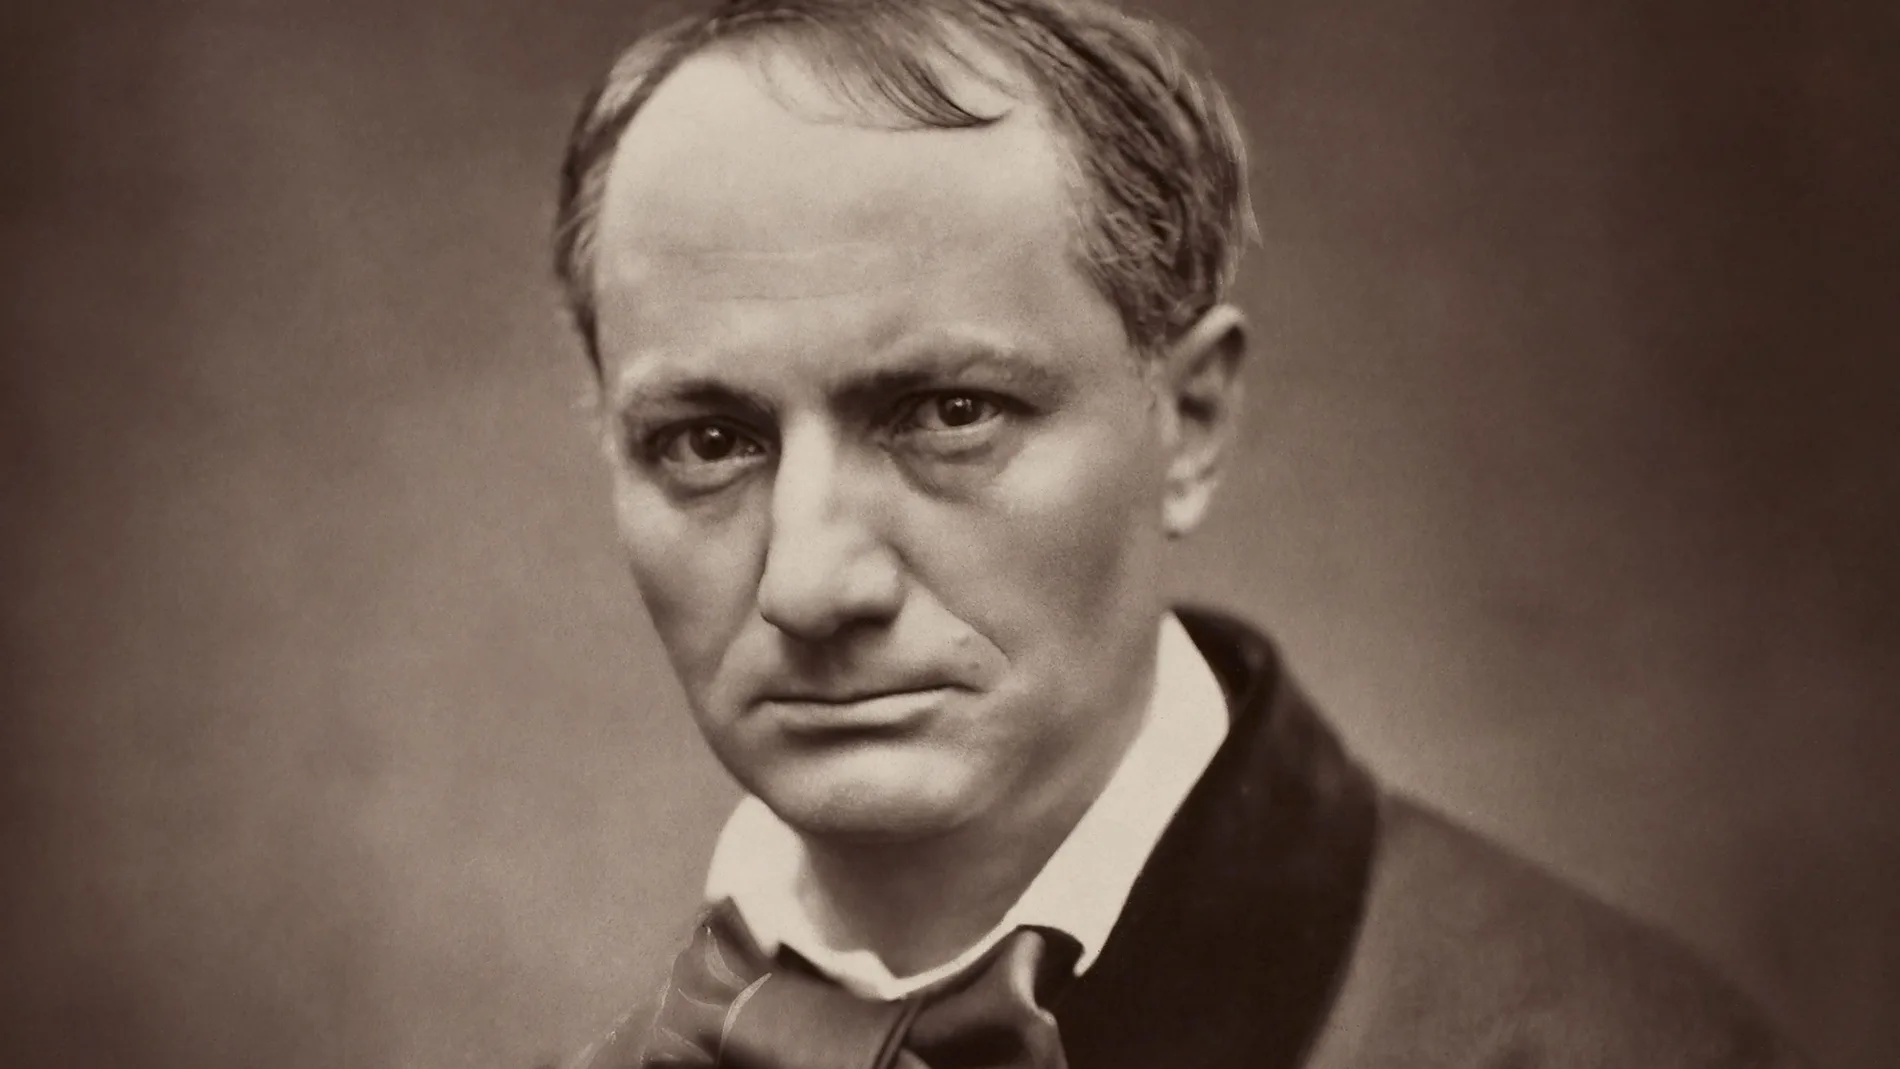 Mañana se cumplen 200 años del nacimiento de Charles Baudelaire, poeta maldito y transformador del género